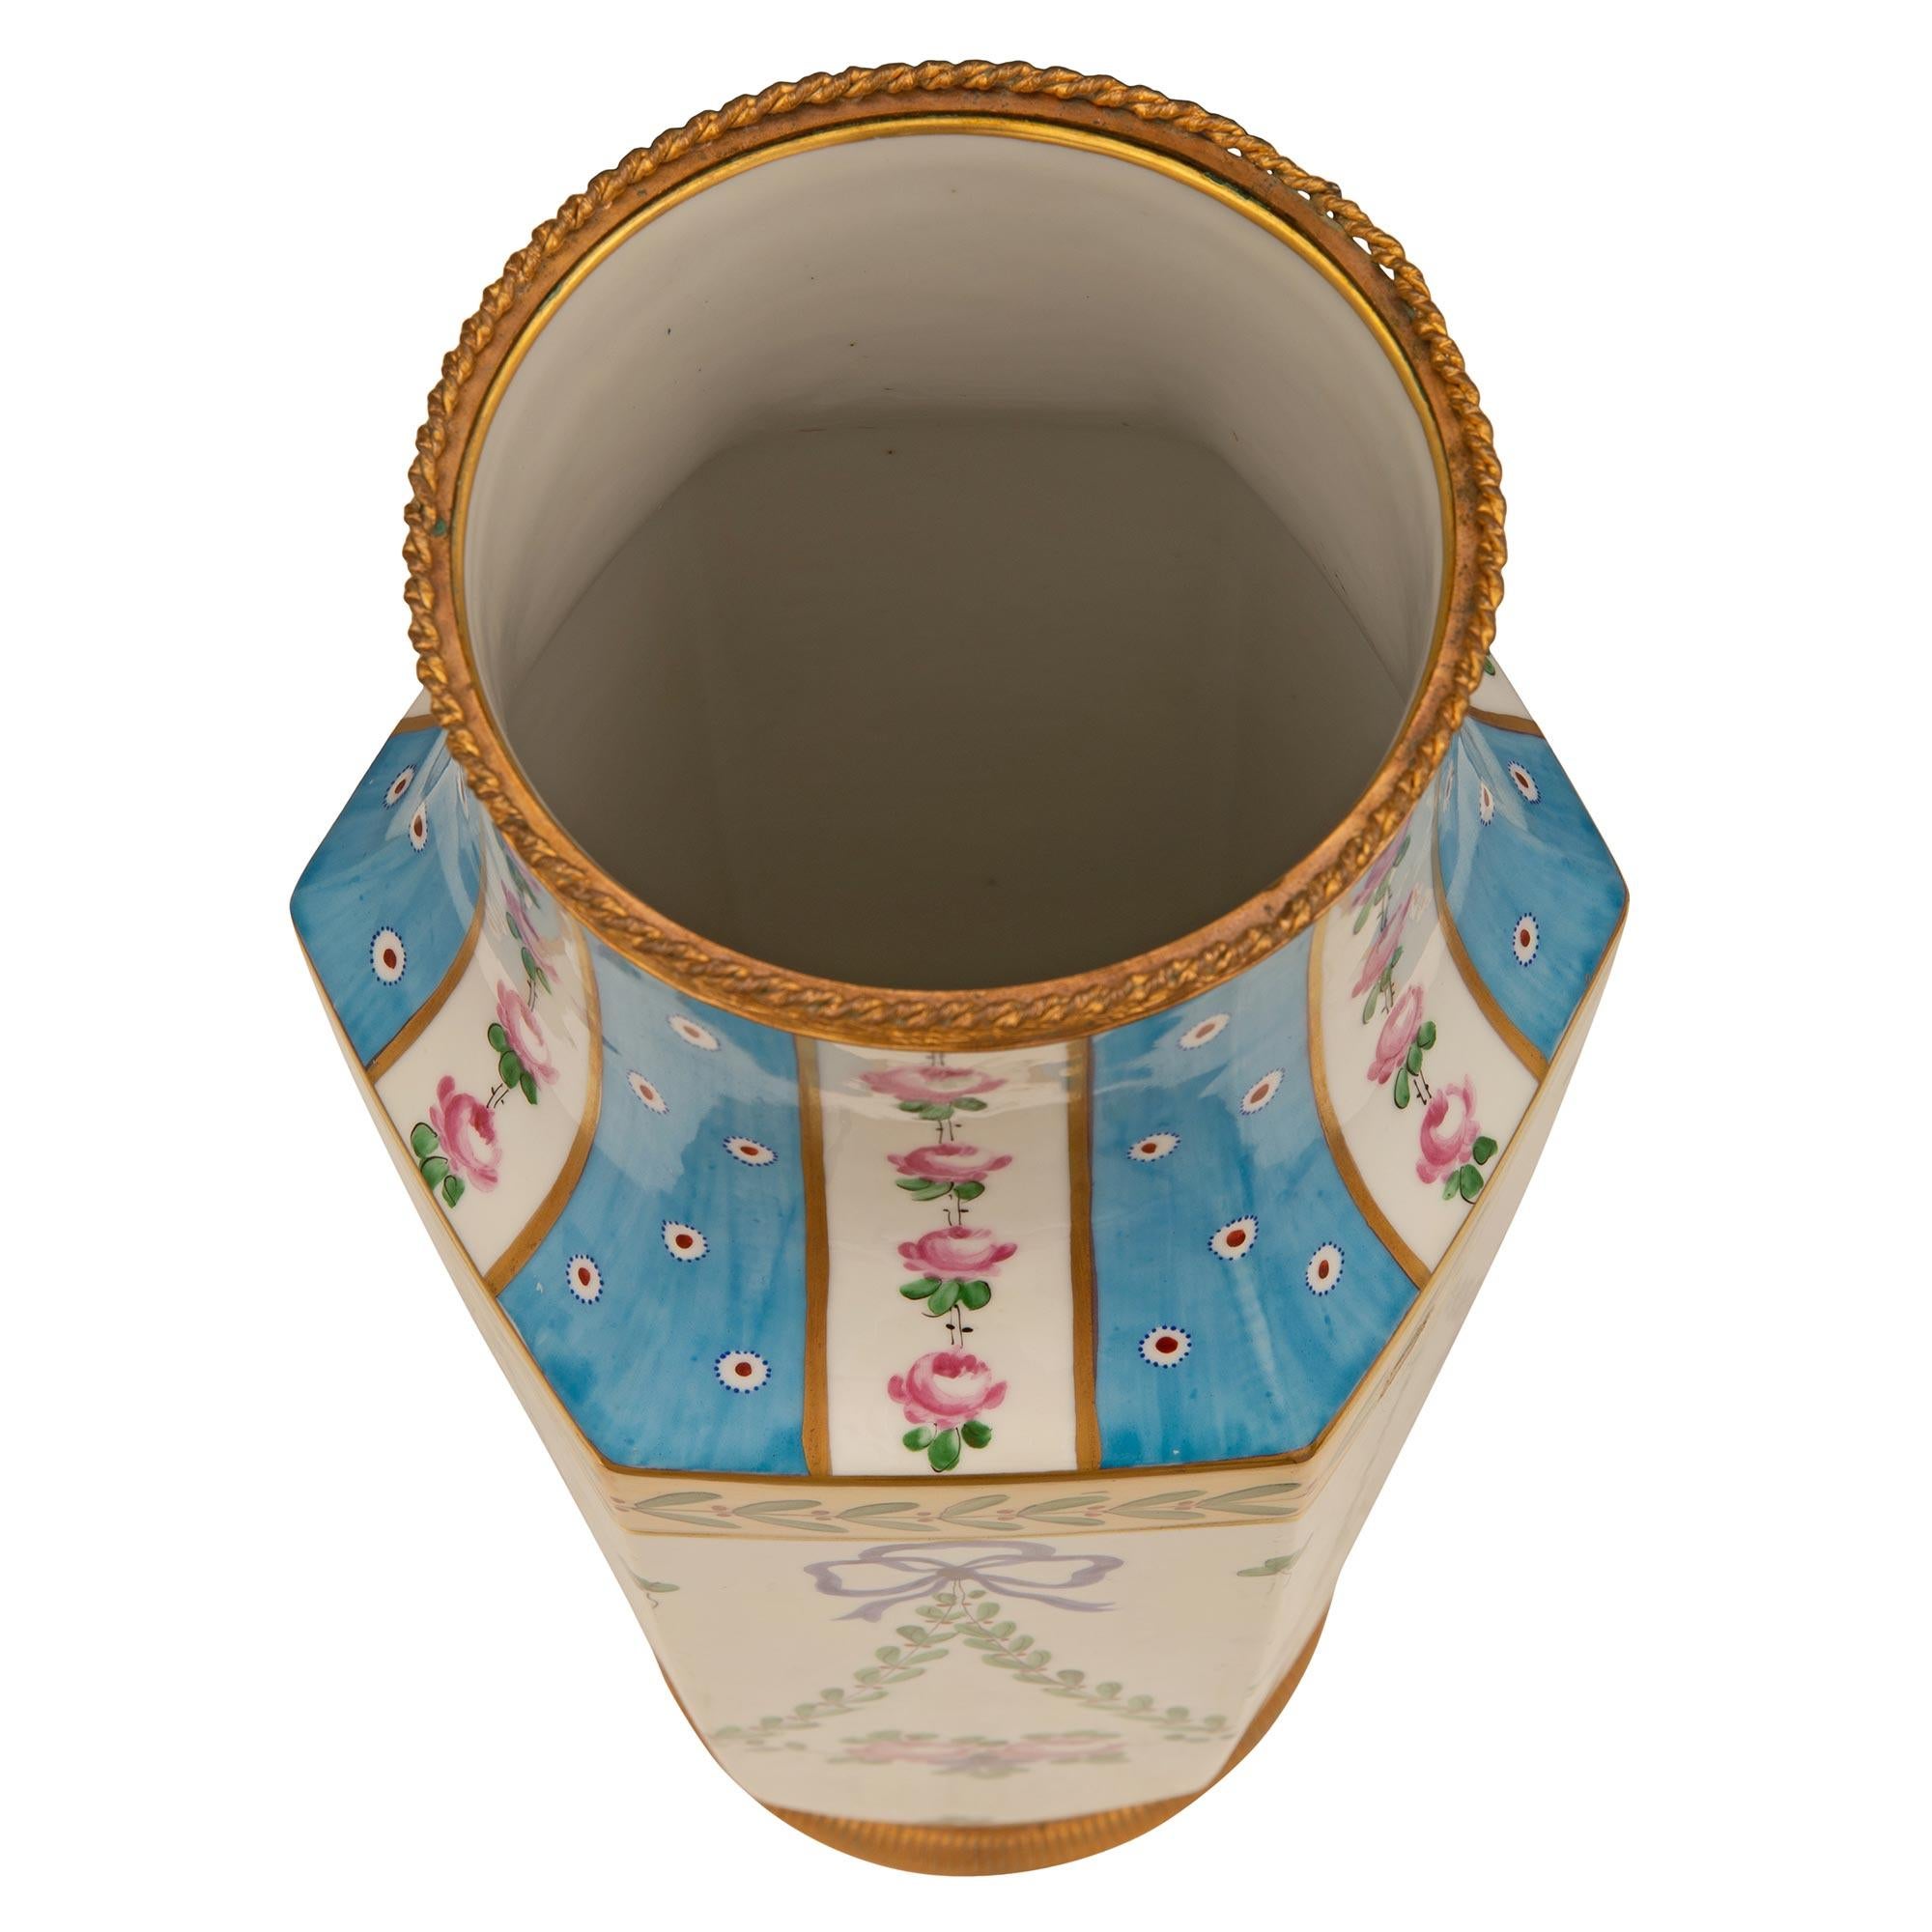 Ein bezauberndes Paar französischer Porzellan- und Ormolu-Vasen des 19. Jahrhunderts aus dem Louis XVI. Jede schöne handbemalte Vase wird von einem fein ziselierten, kreisförmigen Ormolu-Band mit einem schönen Riet- und Lorbeerzweig-Muster gekrönt.